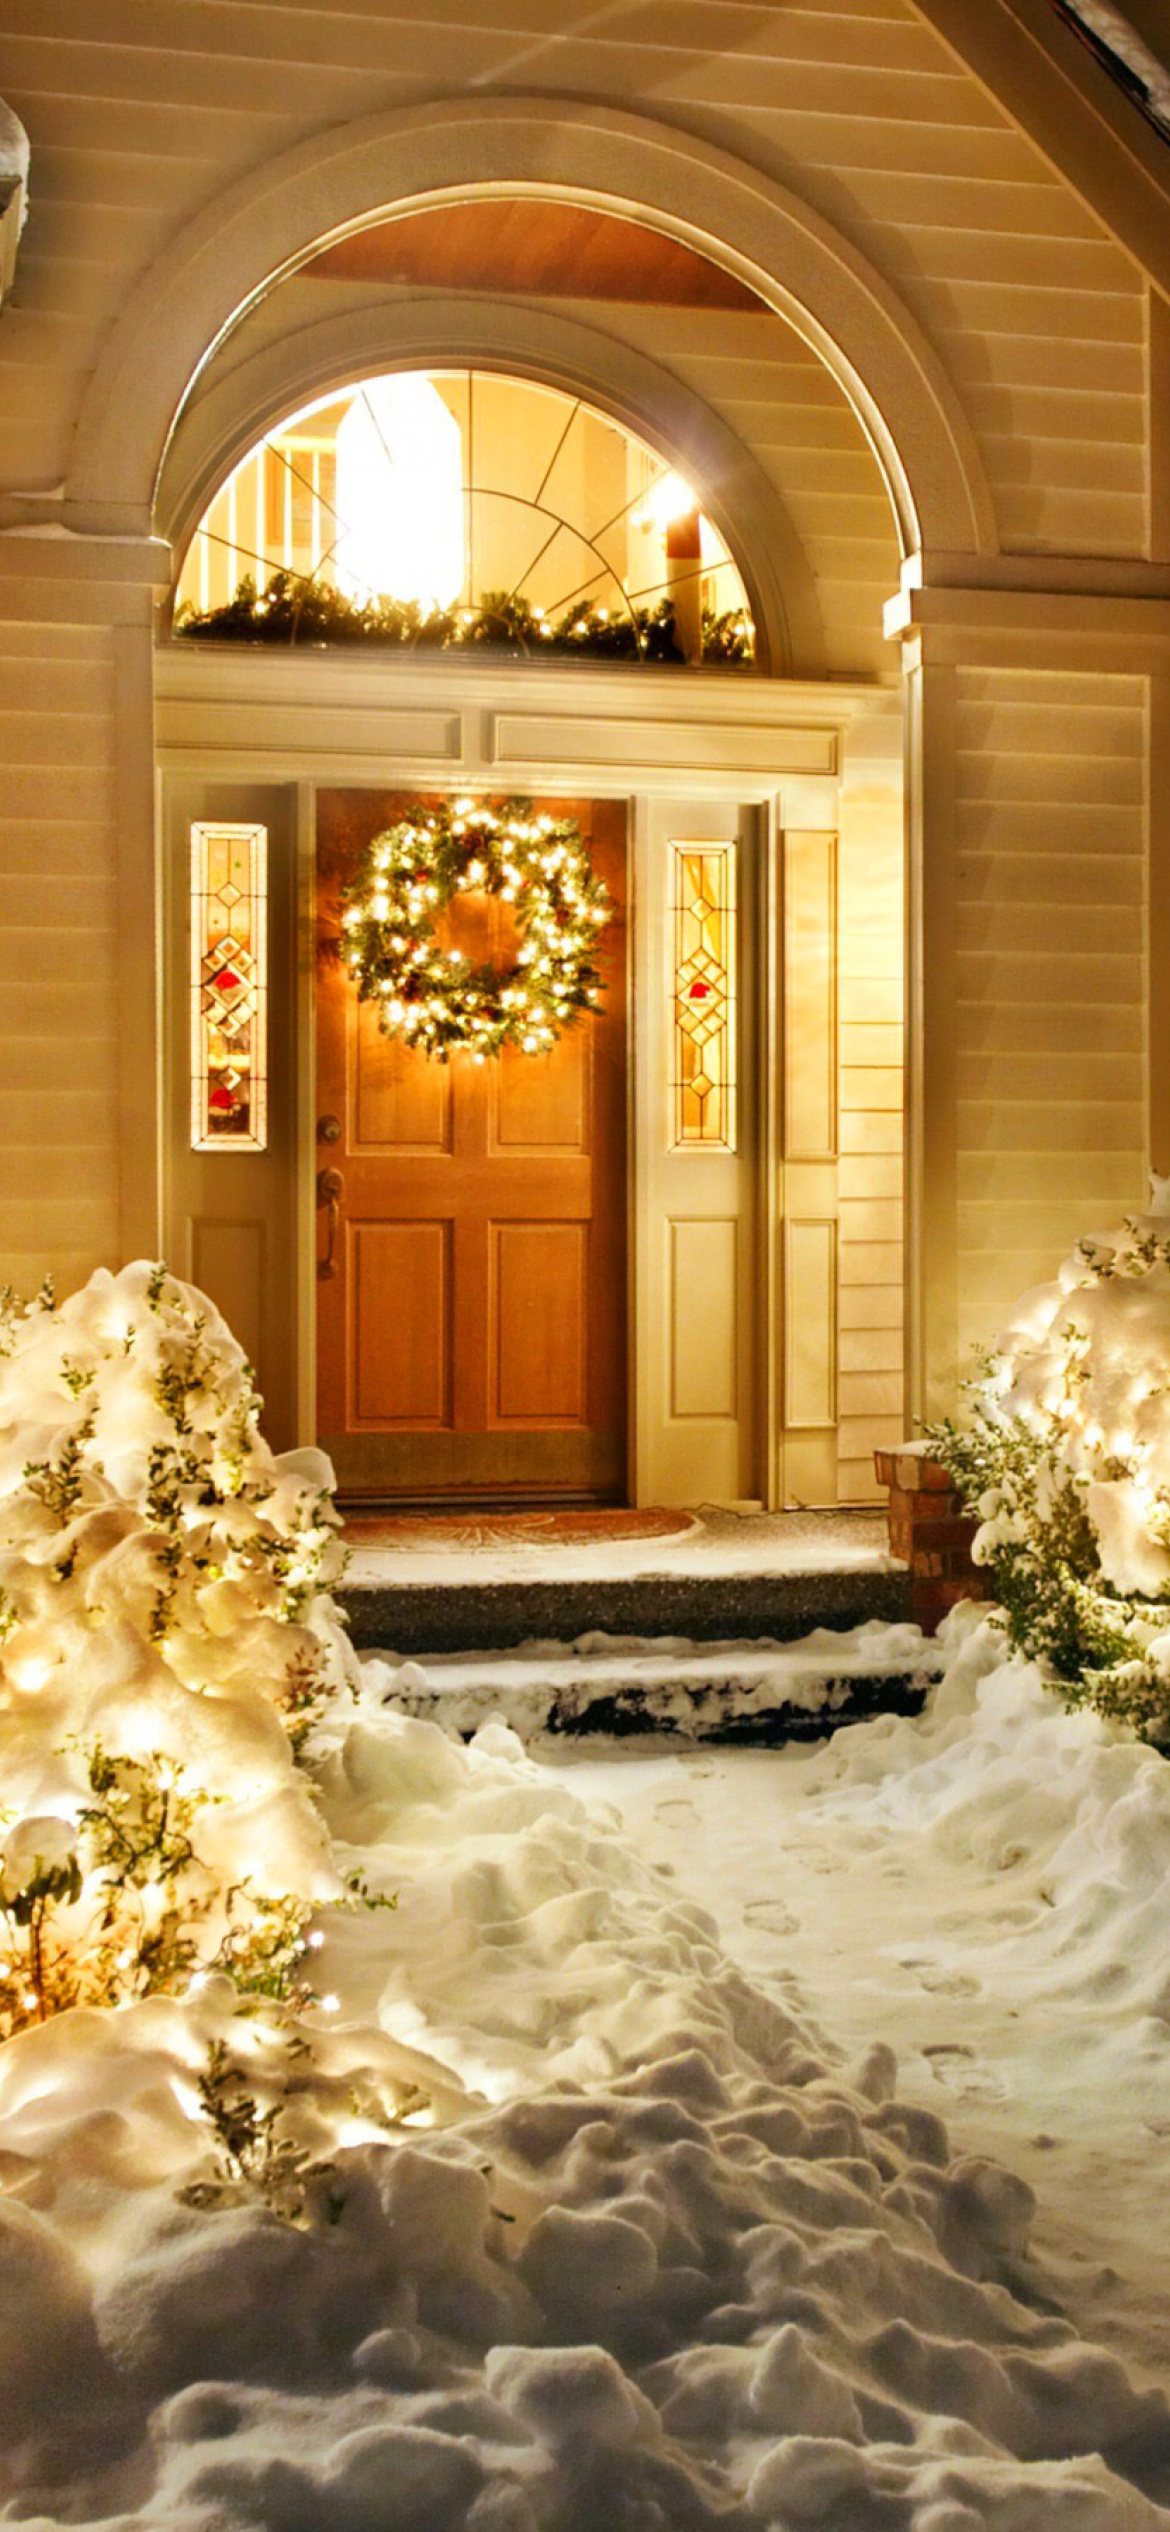 Fondo de pantalla Christmas Outdoor Home Decor Idea 1170x2532